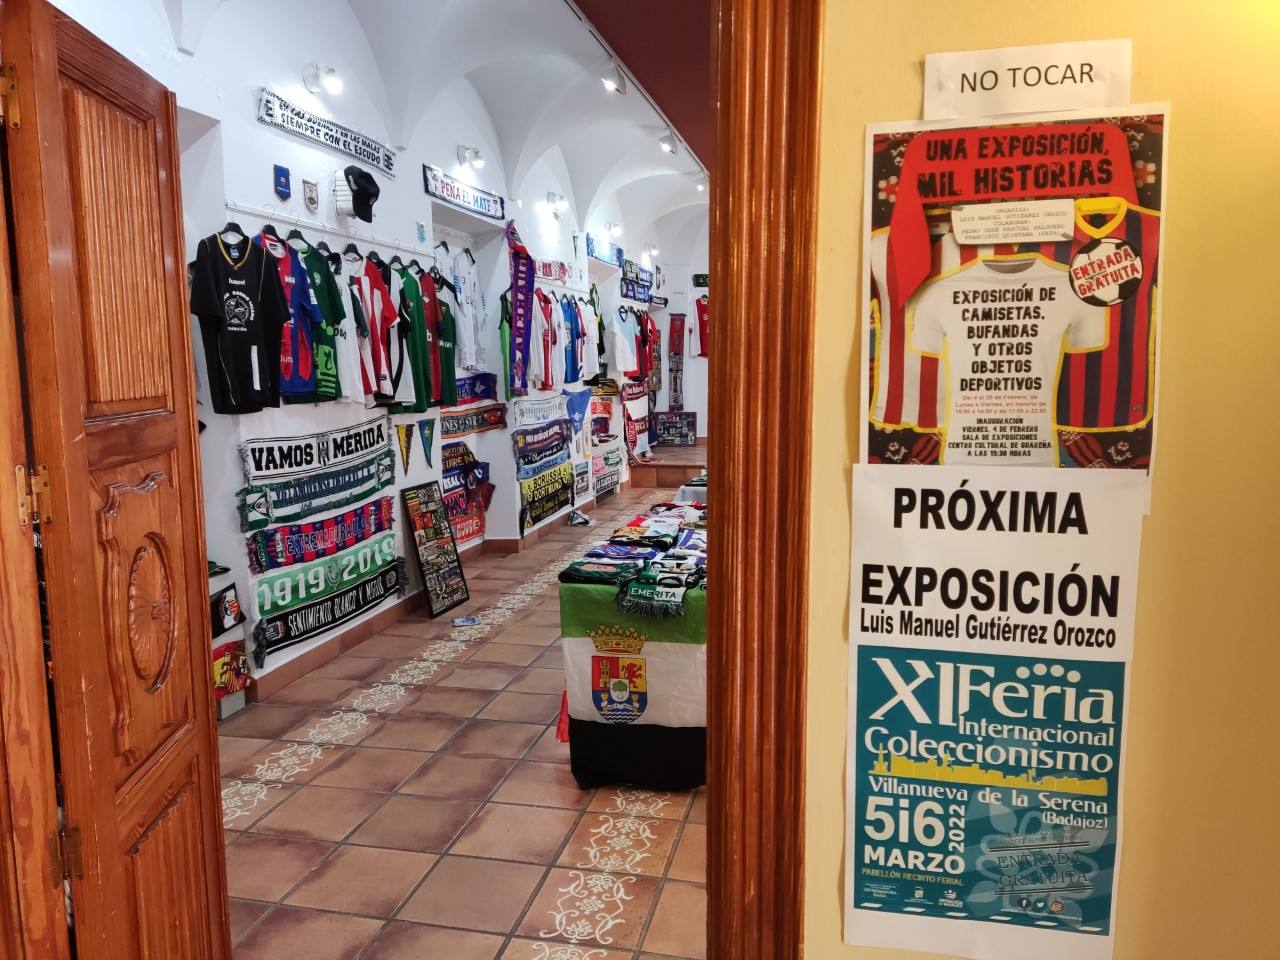 Entrada de la exposición en Guareña que ya anuncia la Feria internacional en Villanueva.